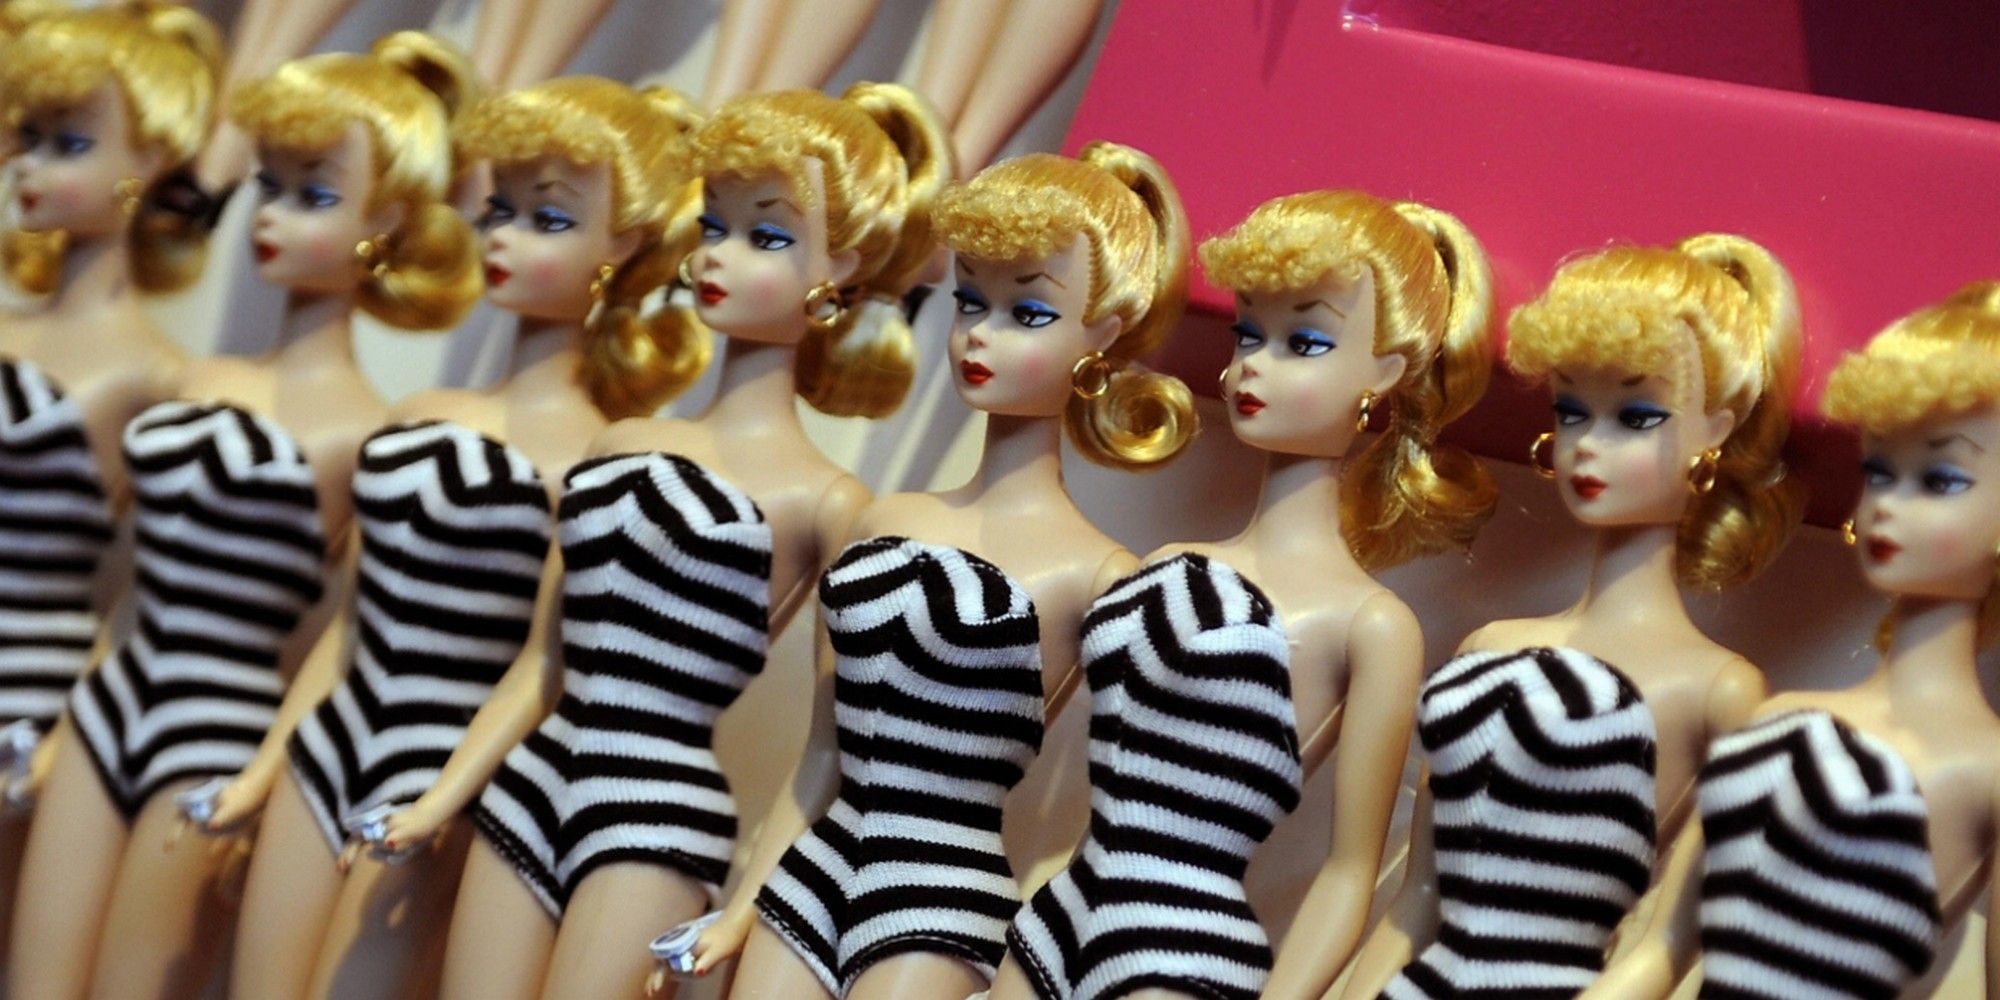 a lineup of original barbies rarest barbie dolls